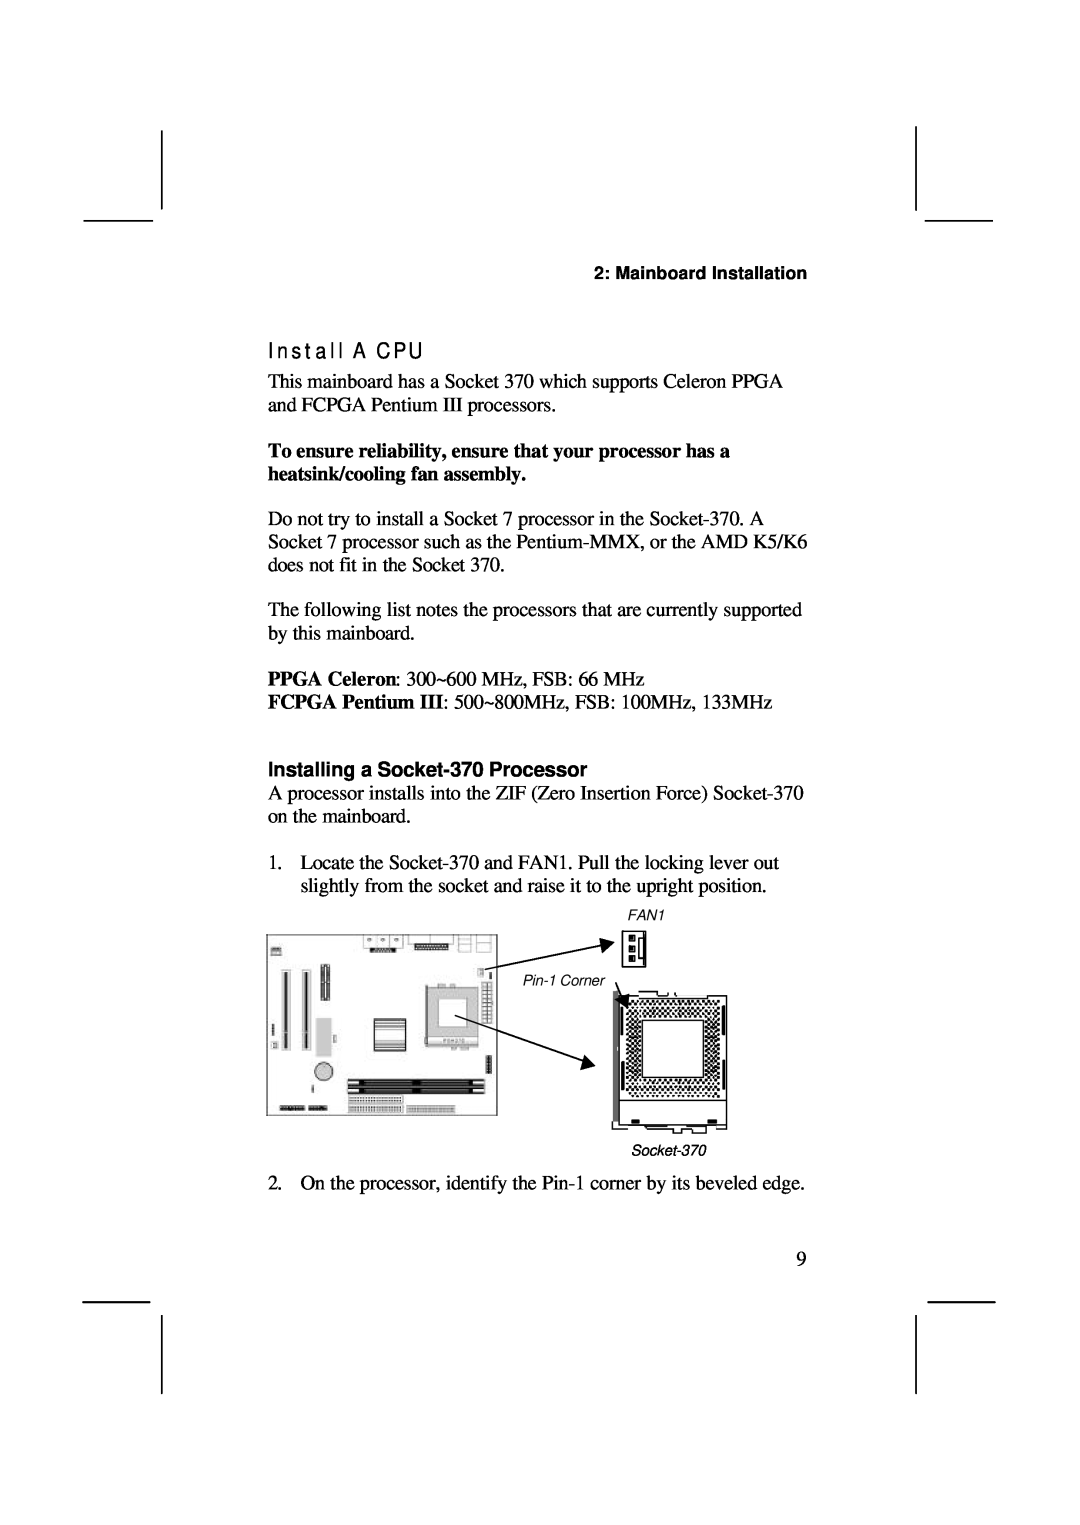 IBM MS7308D/E, V1.6 S63X/JUNE 2000 user manual Install A CPU, Installing a Socket-370 Processor 